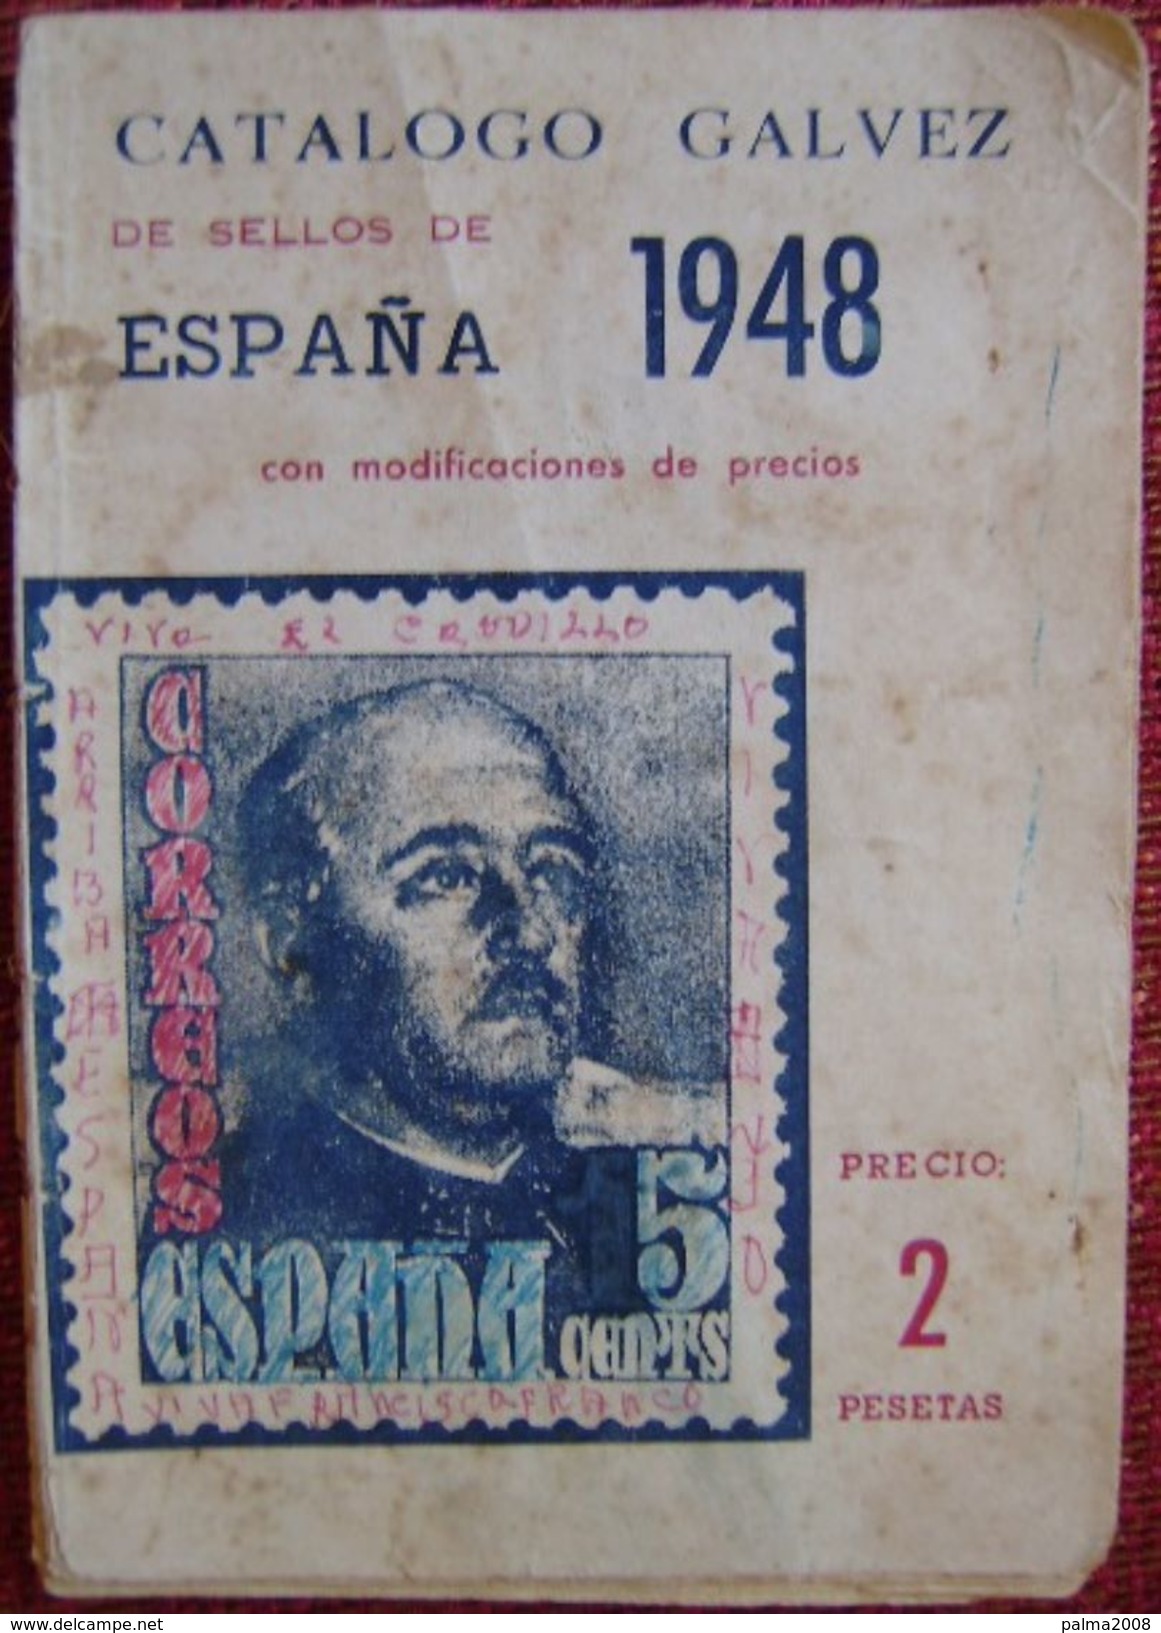 CATALOGO DE GALVEZ ESPAÑA AÑO 1948 - VER FOTOS ADICIONALES - Spain